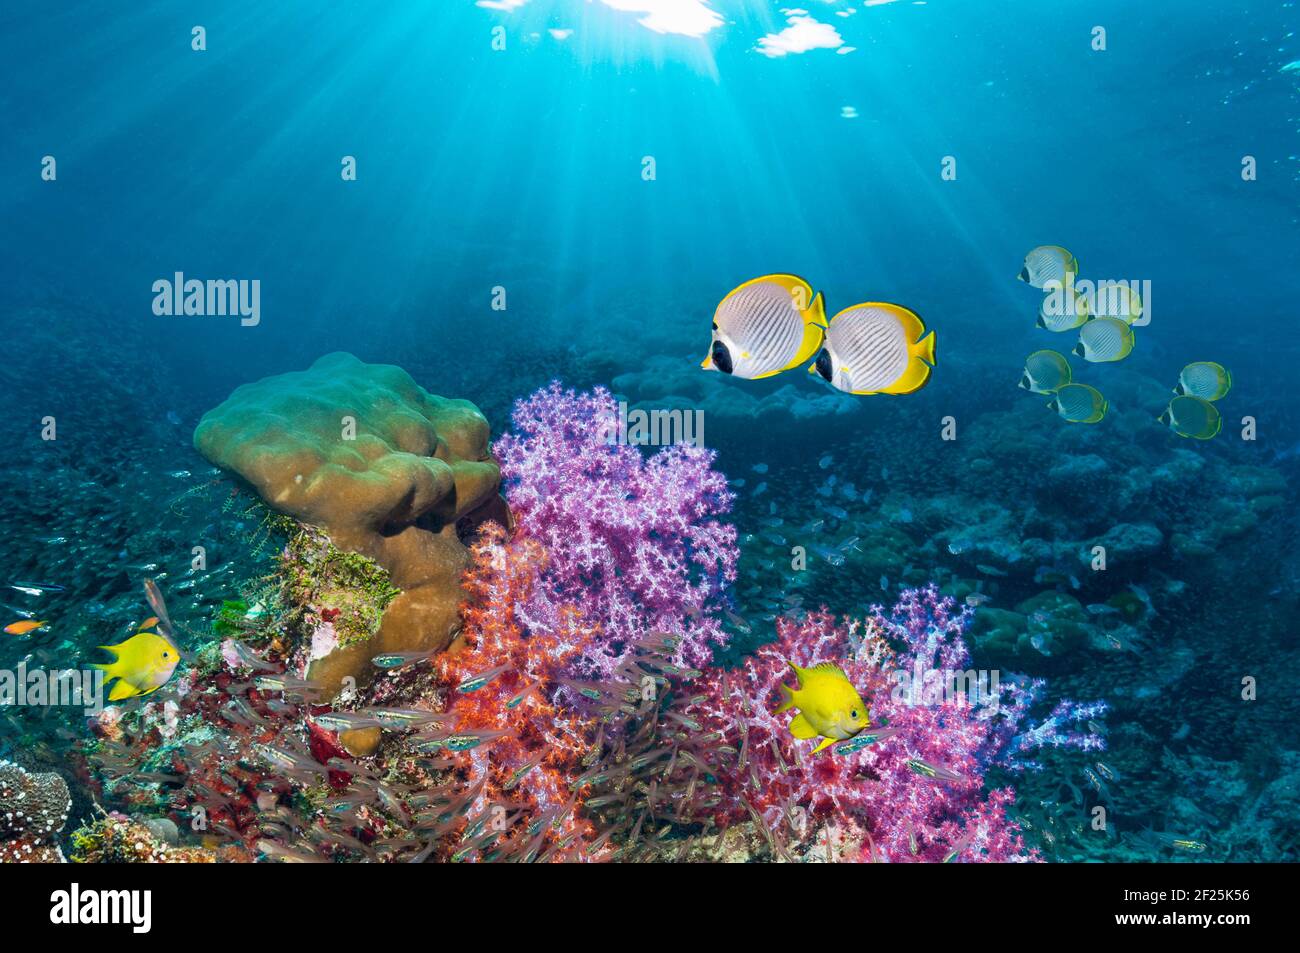 Paisaje de arrecifes de coral con bariñe panda [Chaetodon adiergastos], adamegoísta dorado [Amblyglyphidodon aureus] con corales blandos [Dendronephthya sp.] Foto de stock